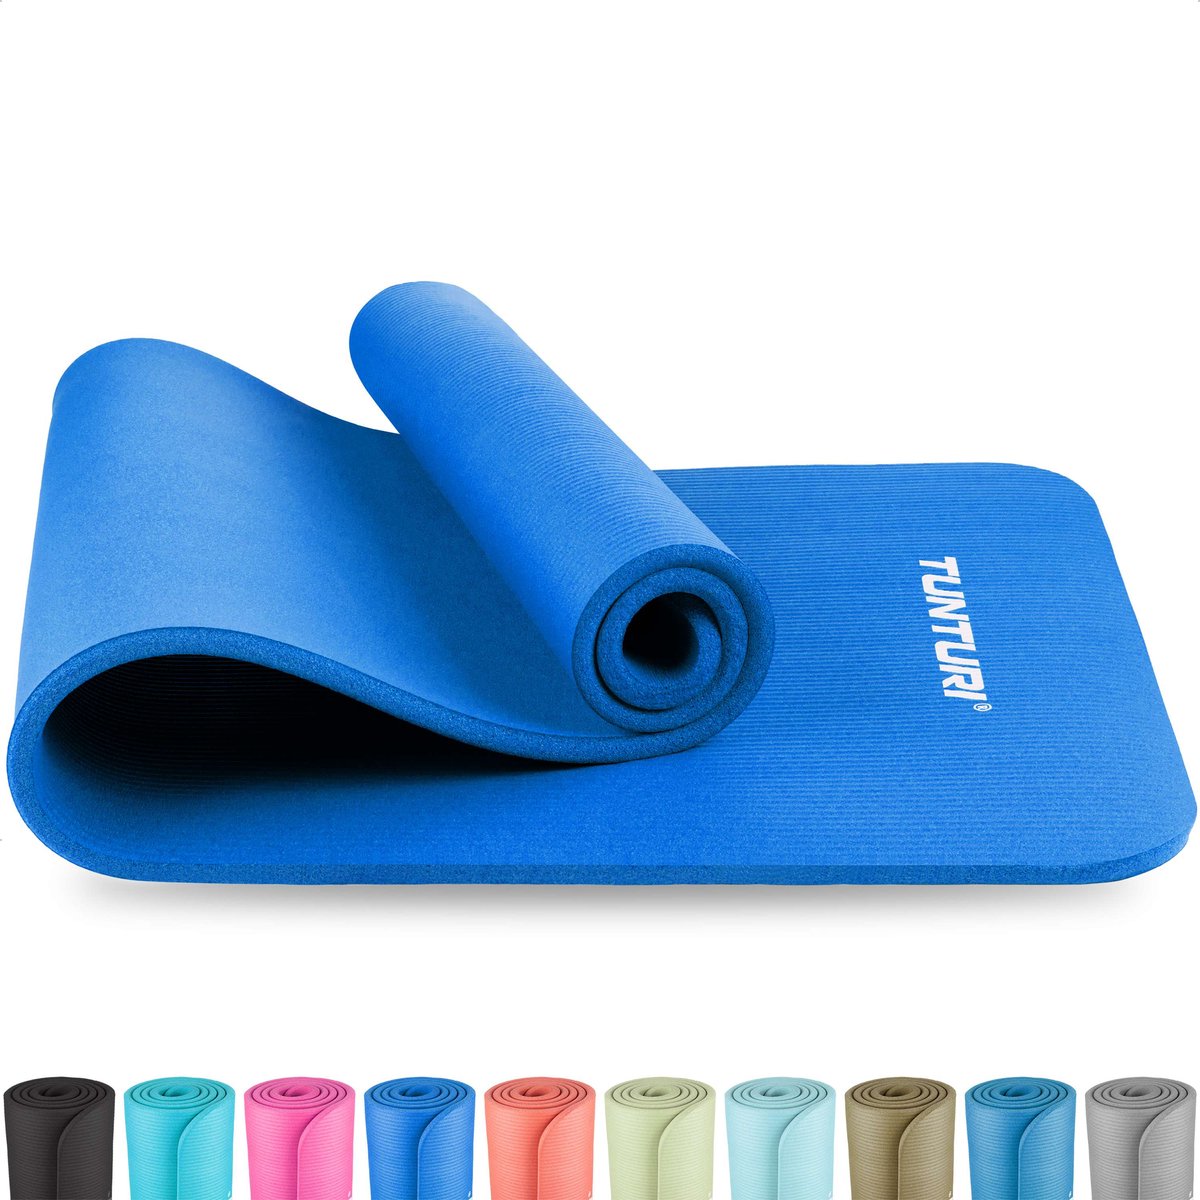 Tunturi NBR Yogamat Anti Slip - Fitnessmat Extra dik & zacht - Sportmat - 180x60x1.5cm - Incl Trainingsapp - Blauw - Tunturi